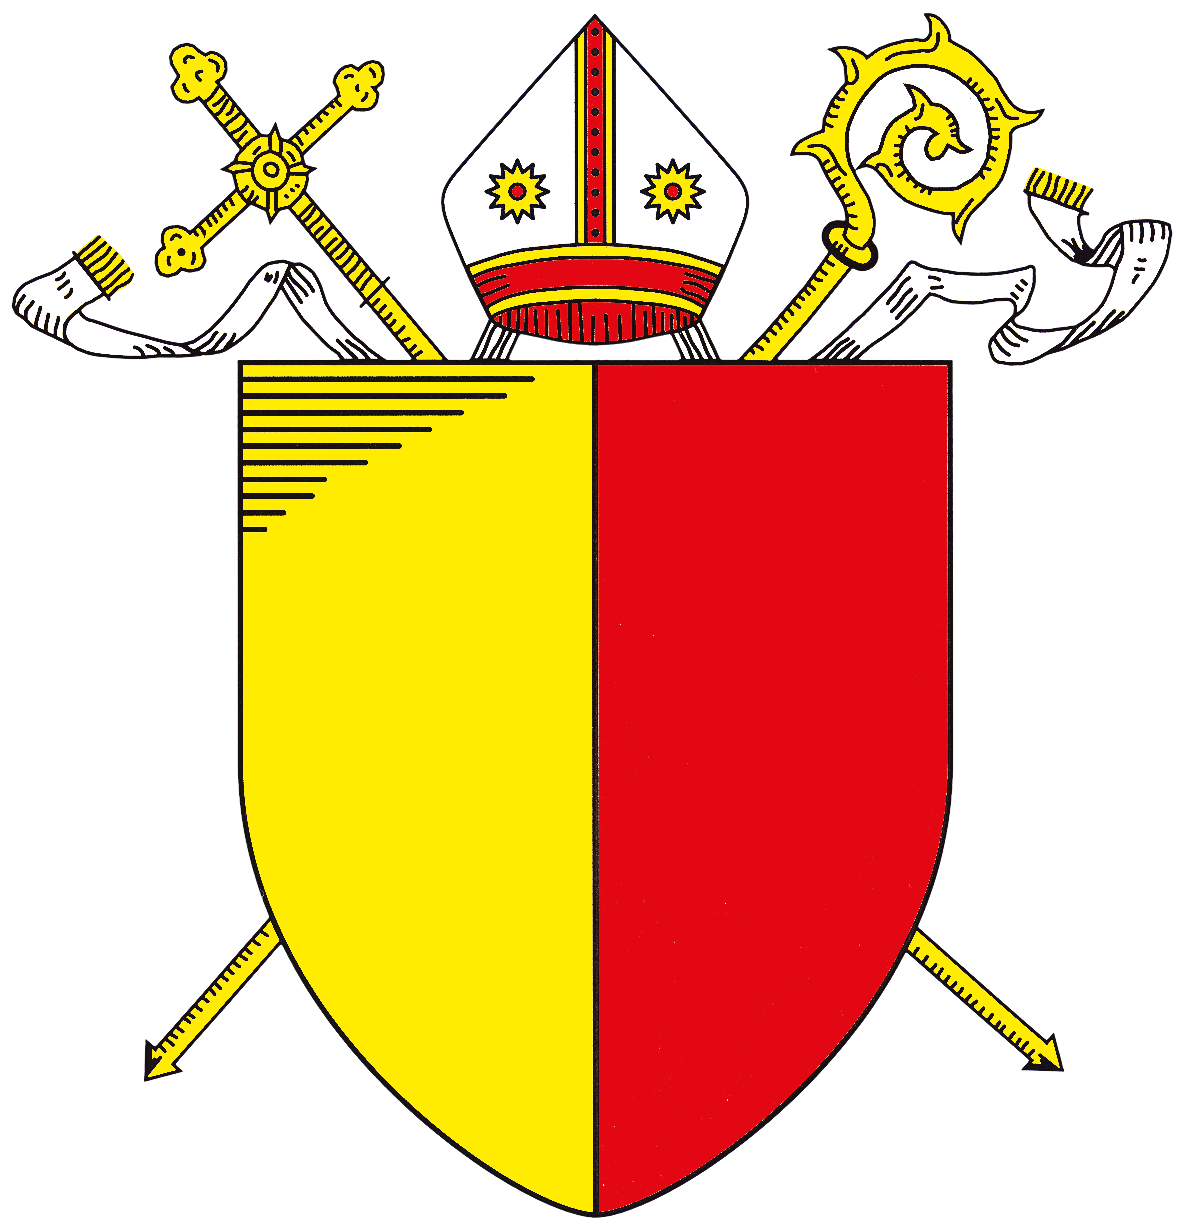 Wappen des Bistums Hildesheim: Ein in Gold und Rot gespaltener Schild, umrahmt von einer Mitra und zwei Bischofsstäben.